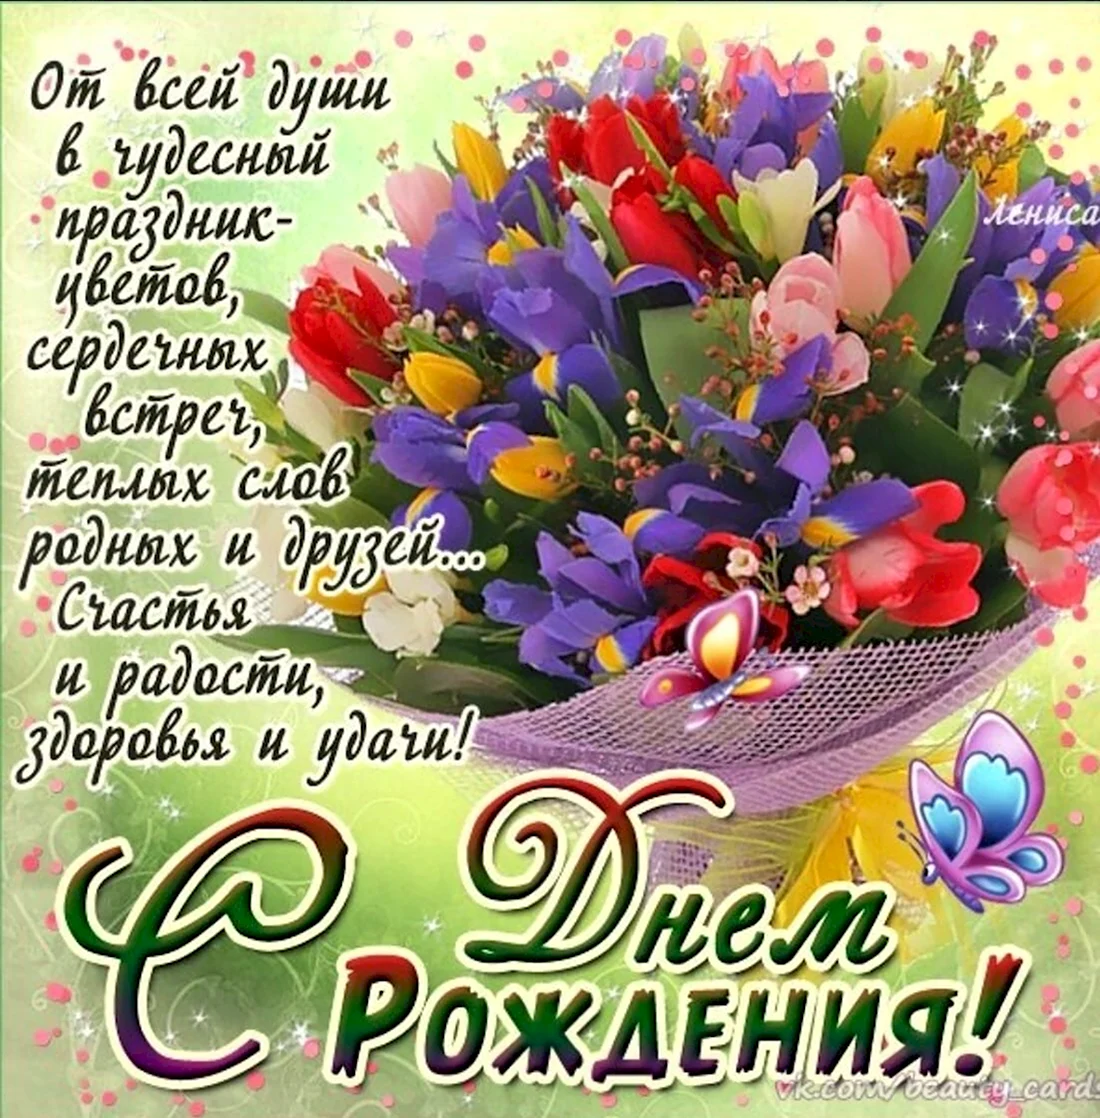 Лучшие поздравления с днем рождения подруге в стихах и прозе - Новости на detishmidta.ru